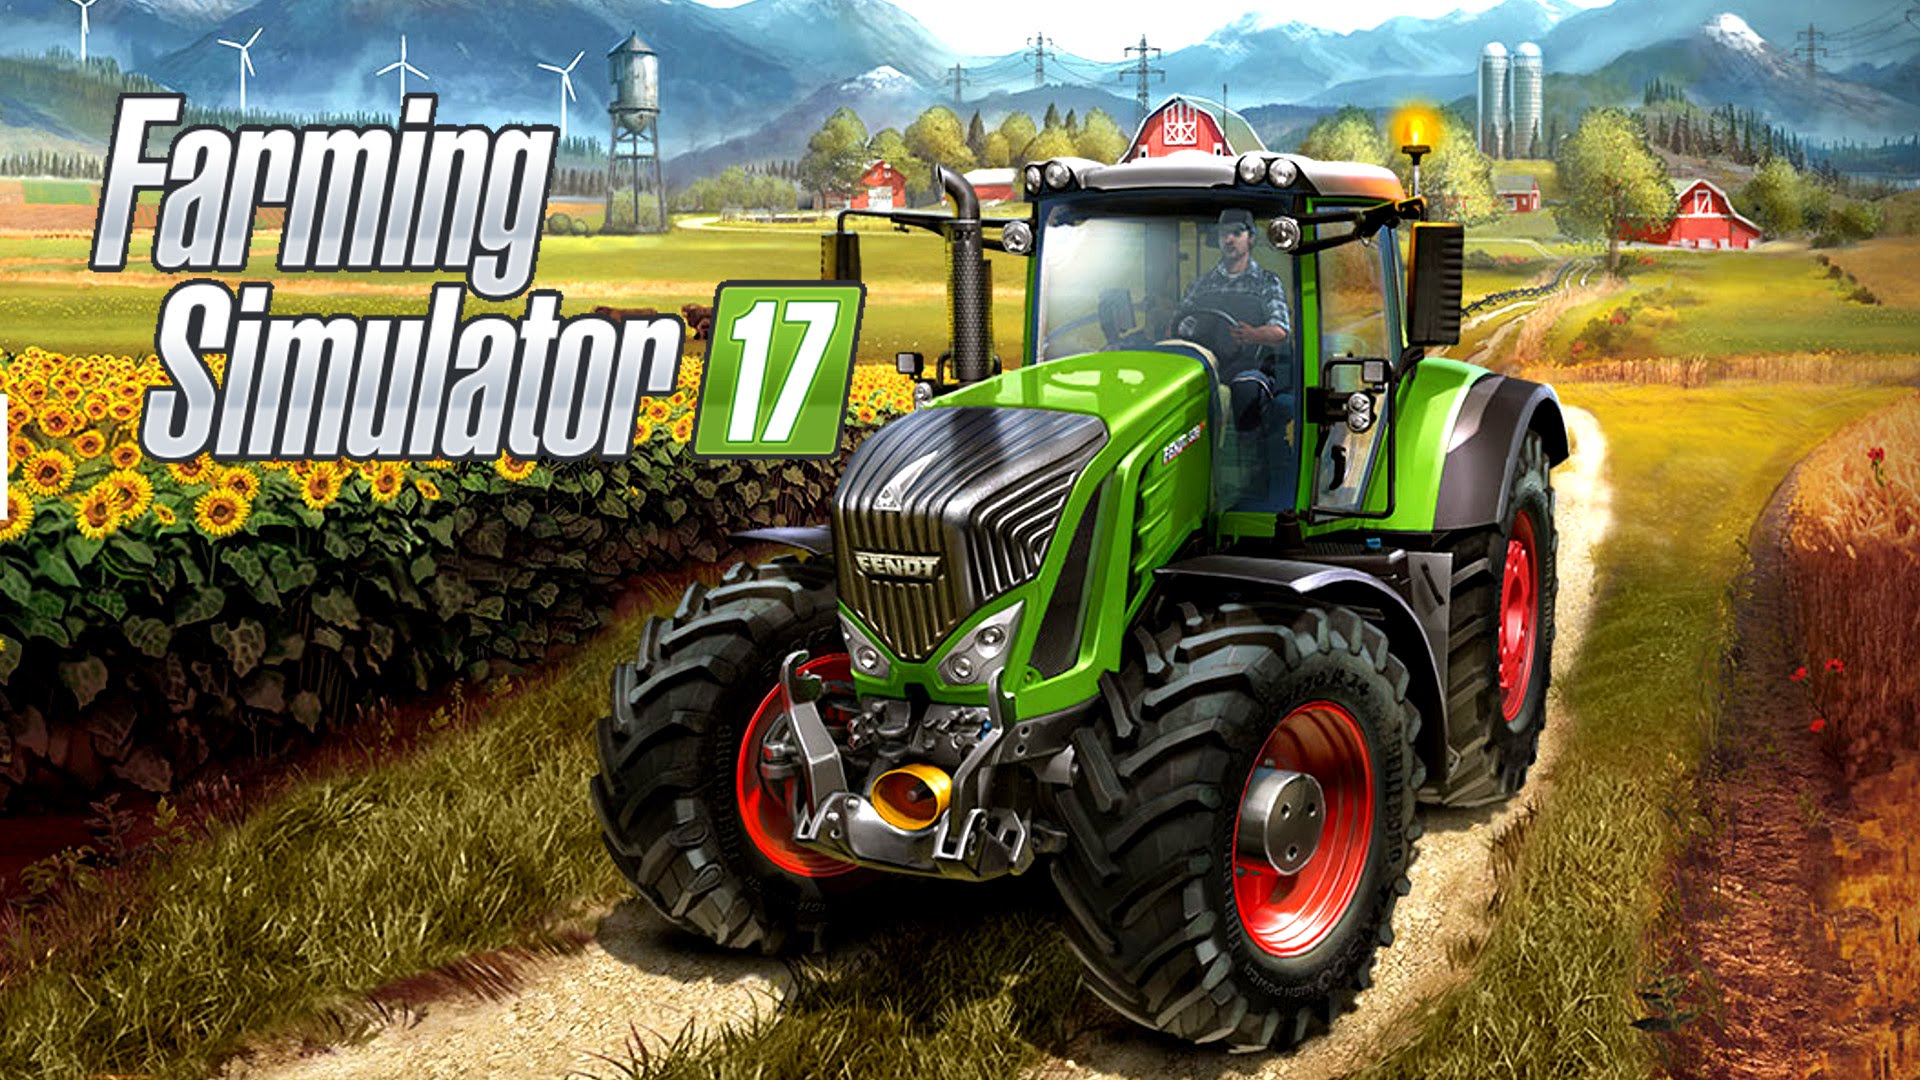 farming simulator 22 install mods